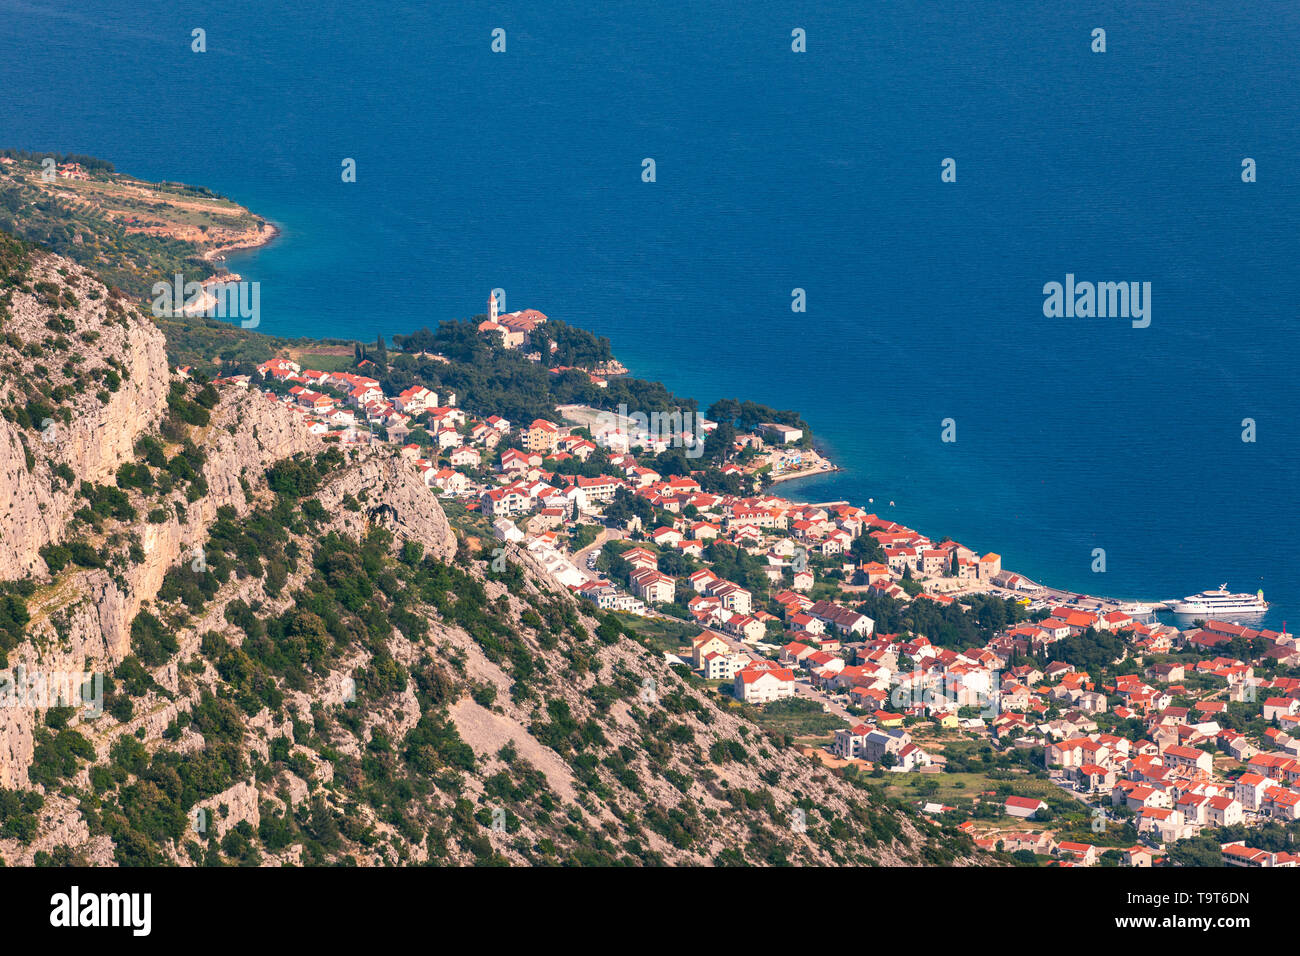 Bol, sur l''île de Brac vue panoramique vue aérienne, la Dalmatie, Croatie. Ville de Bol de Vidova Gora vue aérienne, île de Brac, Croatie. Banque D'Images